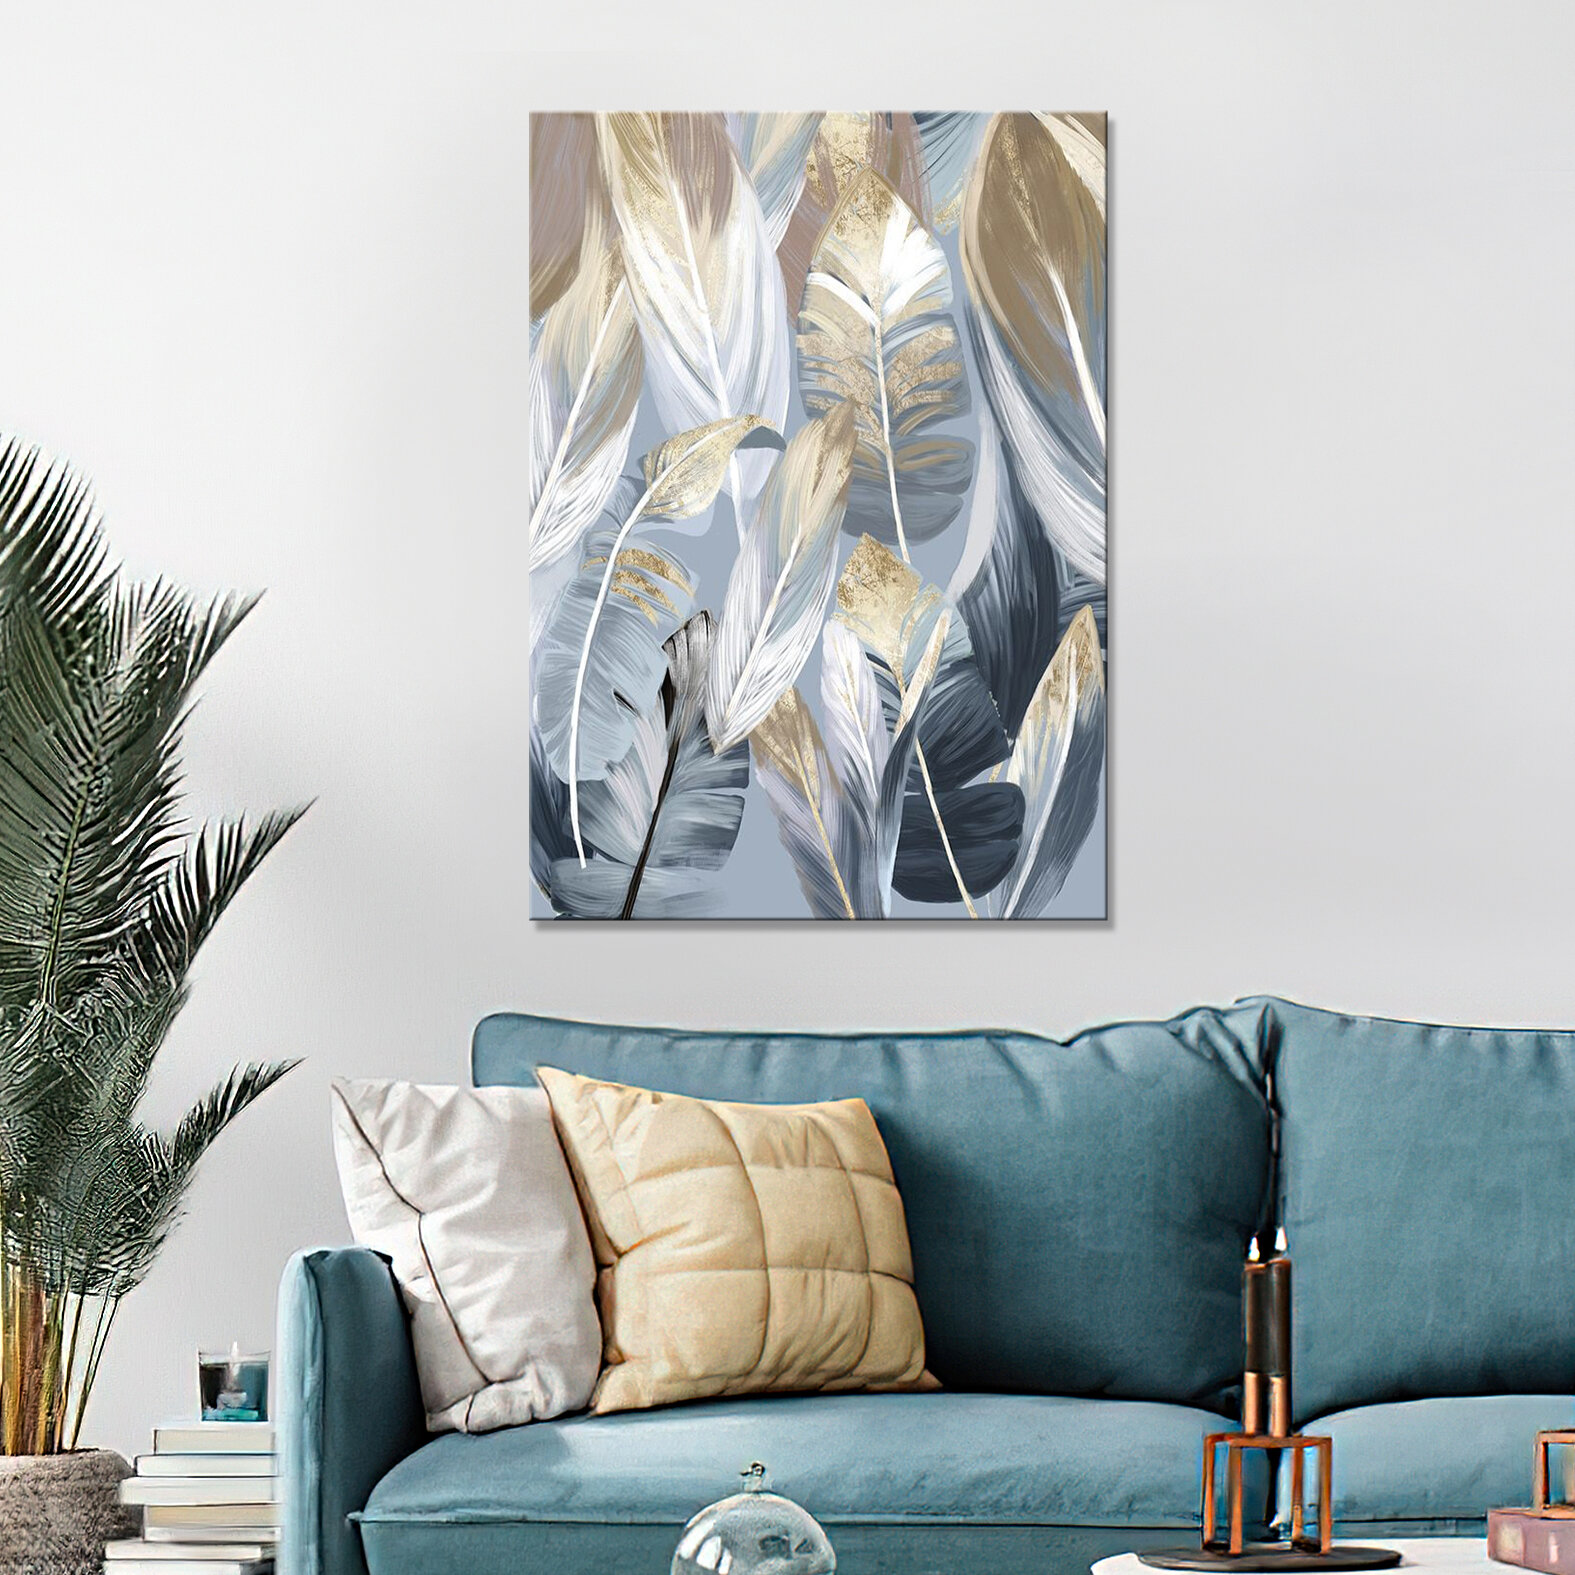 Интерьерная картина на холсте на стену/постер/ Бледно-золотистые перья 20х30